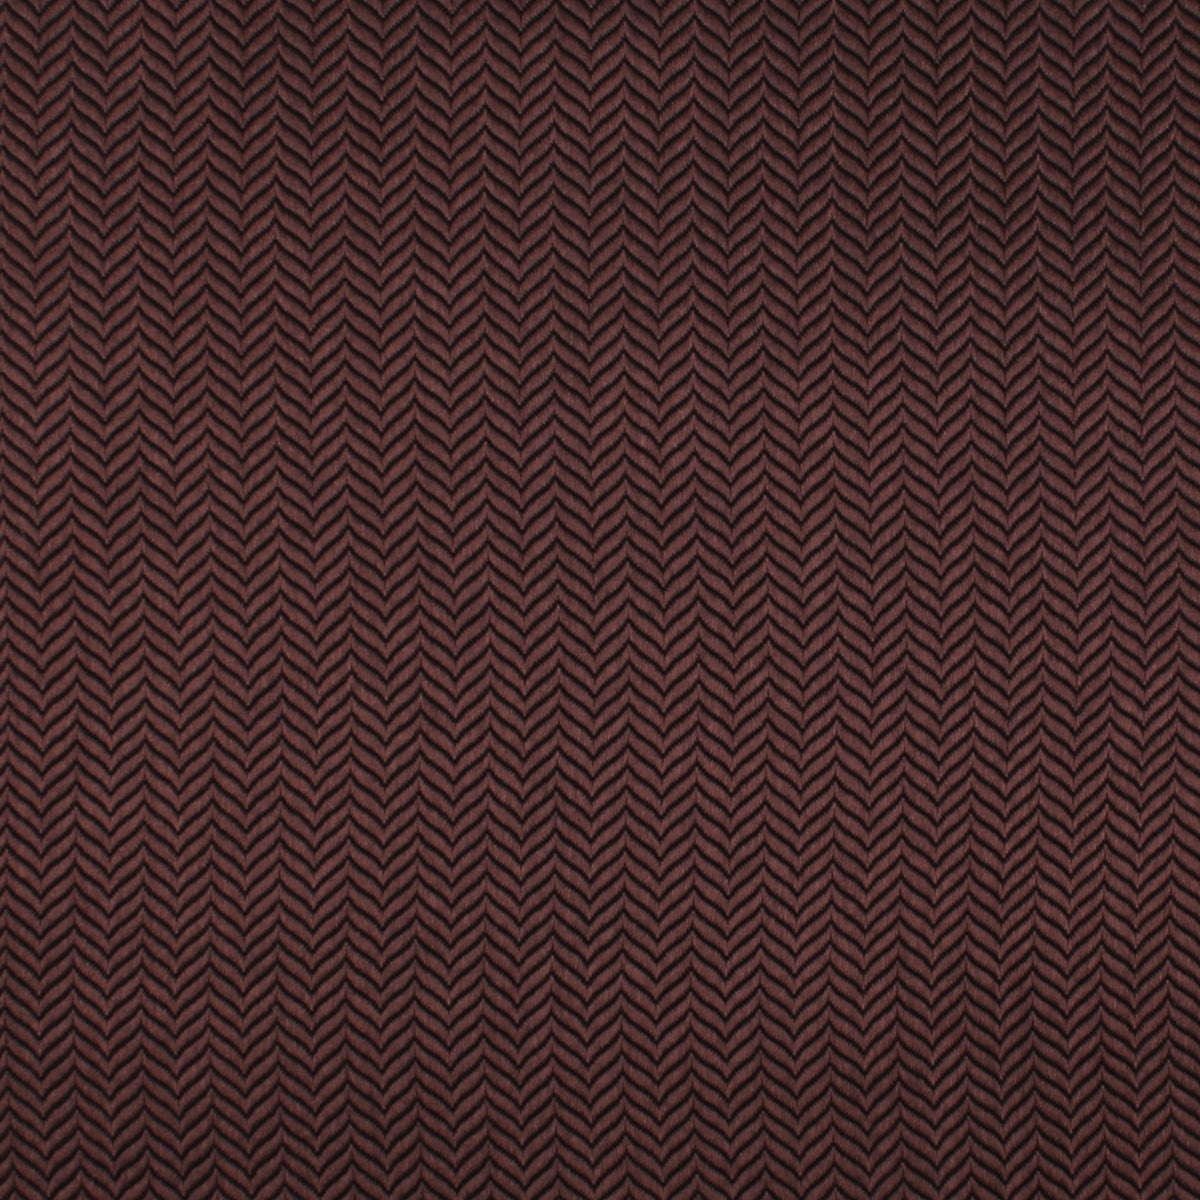 Russet Brown Herringbone Necktie Fabric